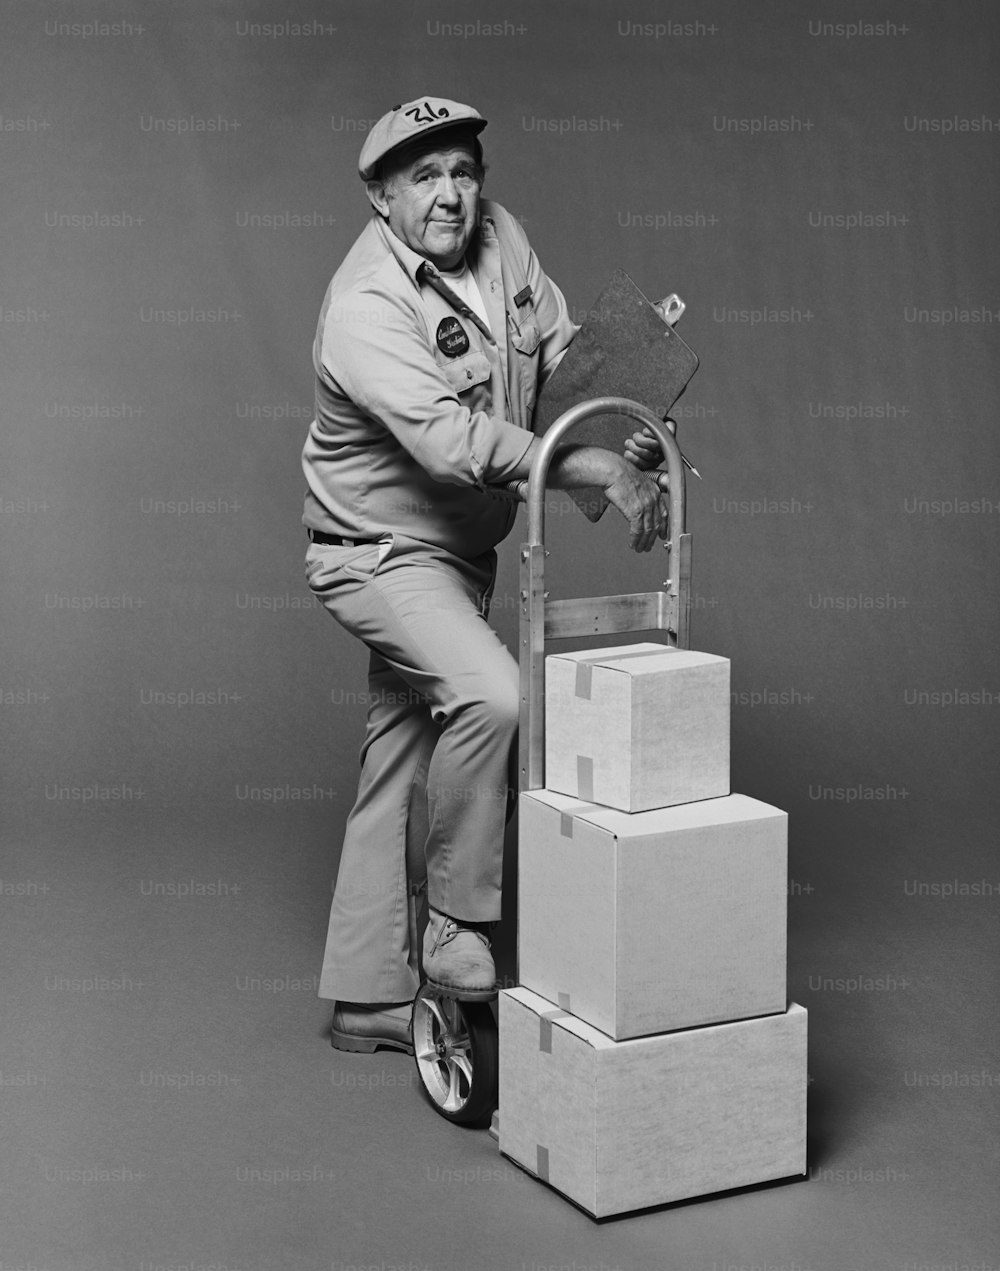 Una foto en blanco y negro de un hombre apoyado en una pila de cajas